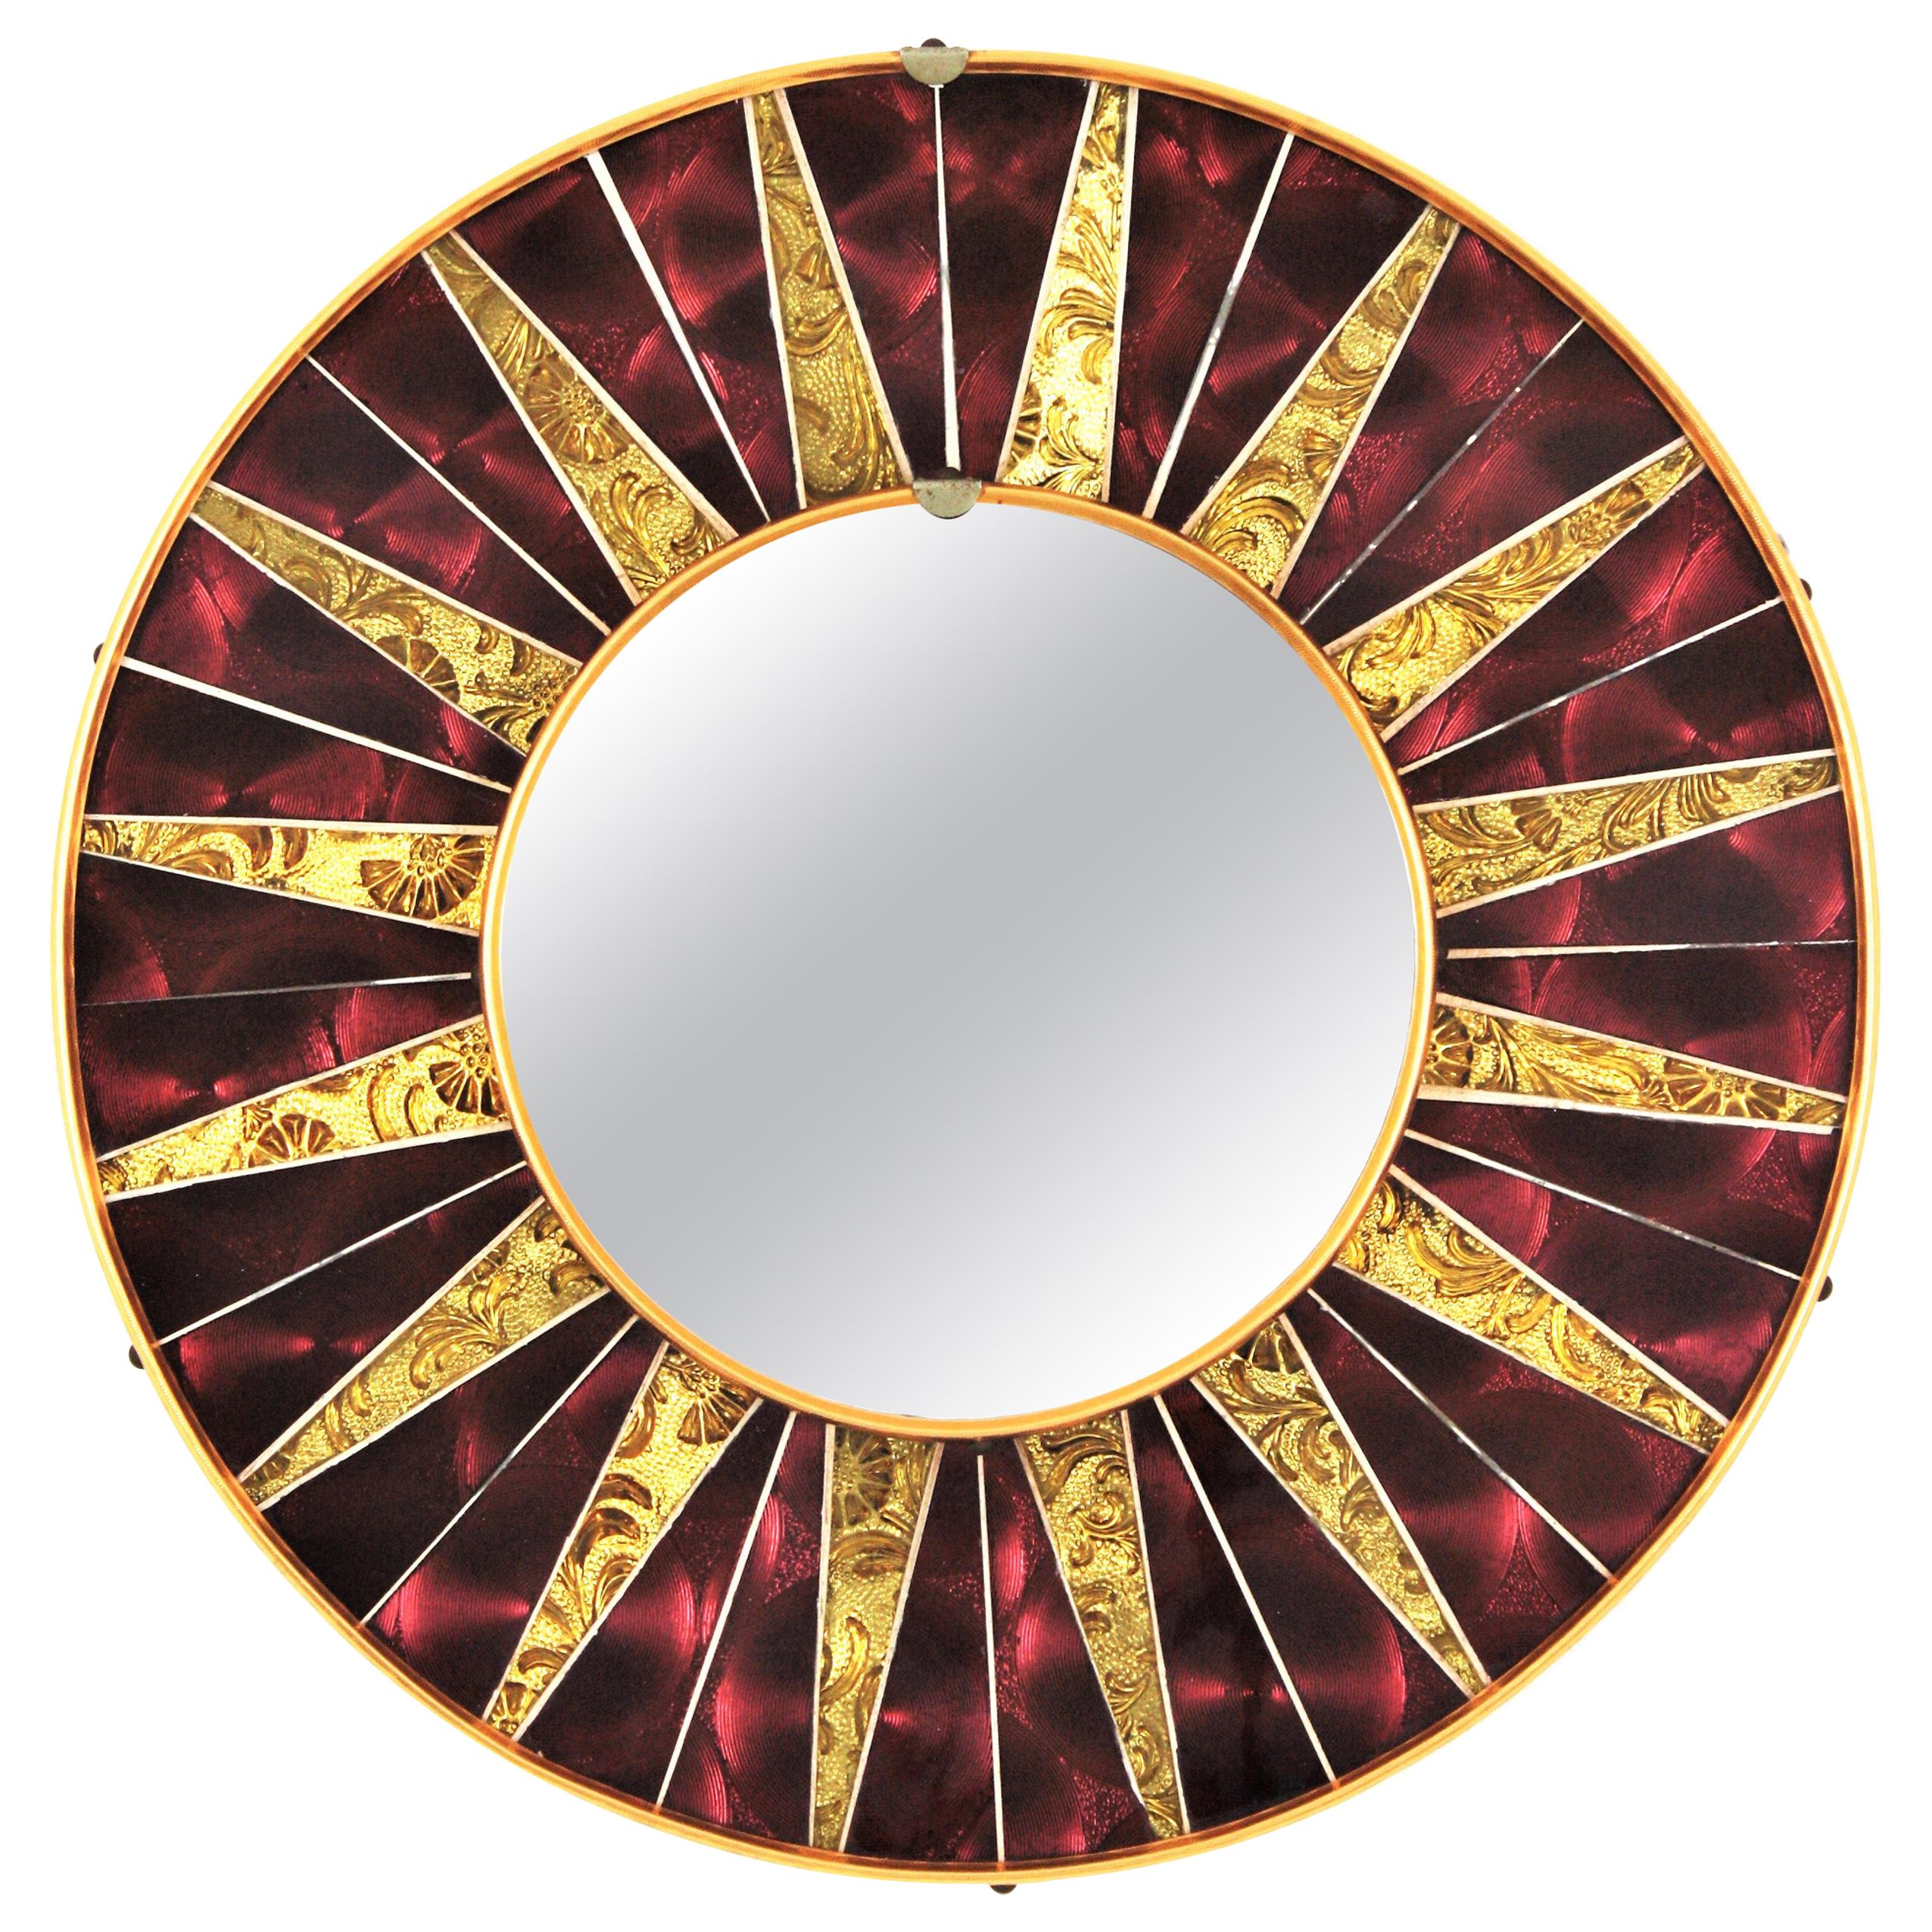 Sunburst Round Mirror with Garnet Golden Glass Mosaic Frame